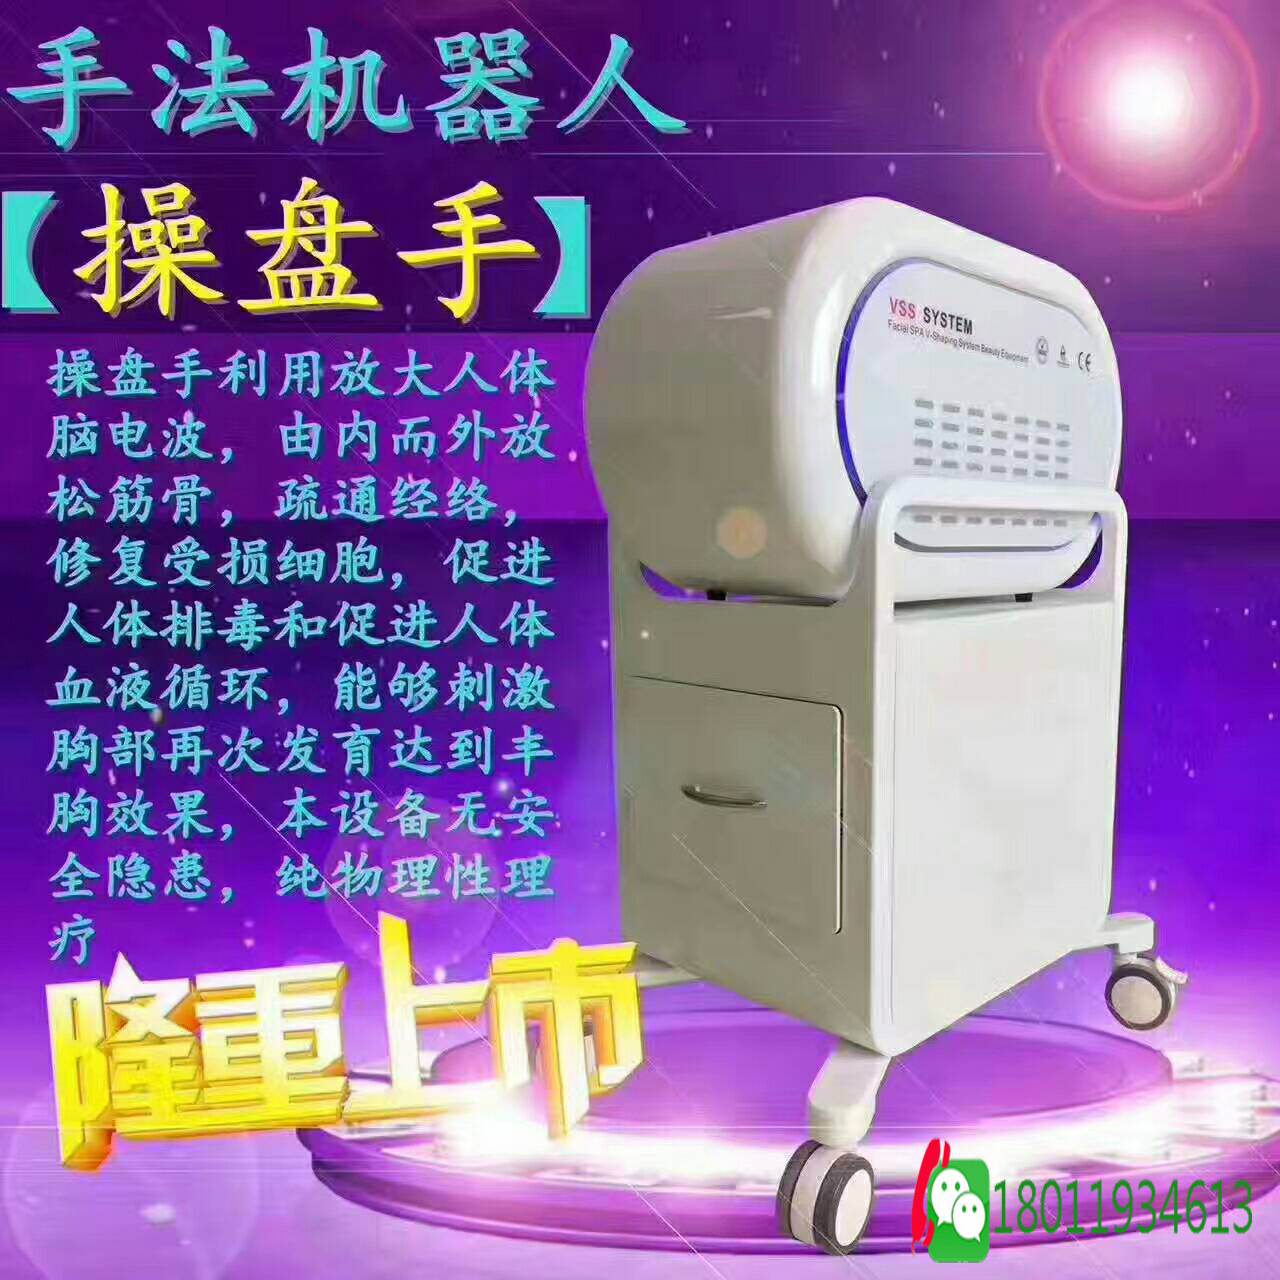 广州超盘手手法按摩机器人批发价批发